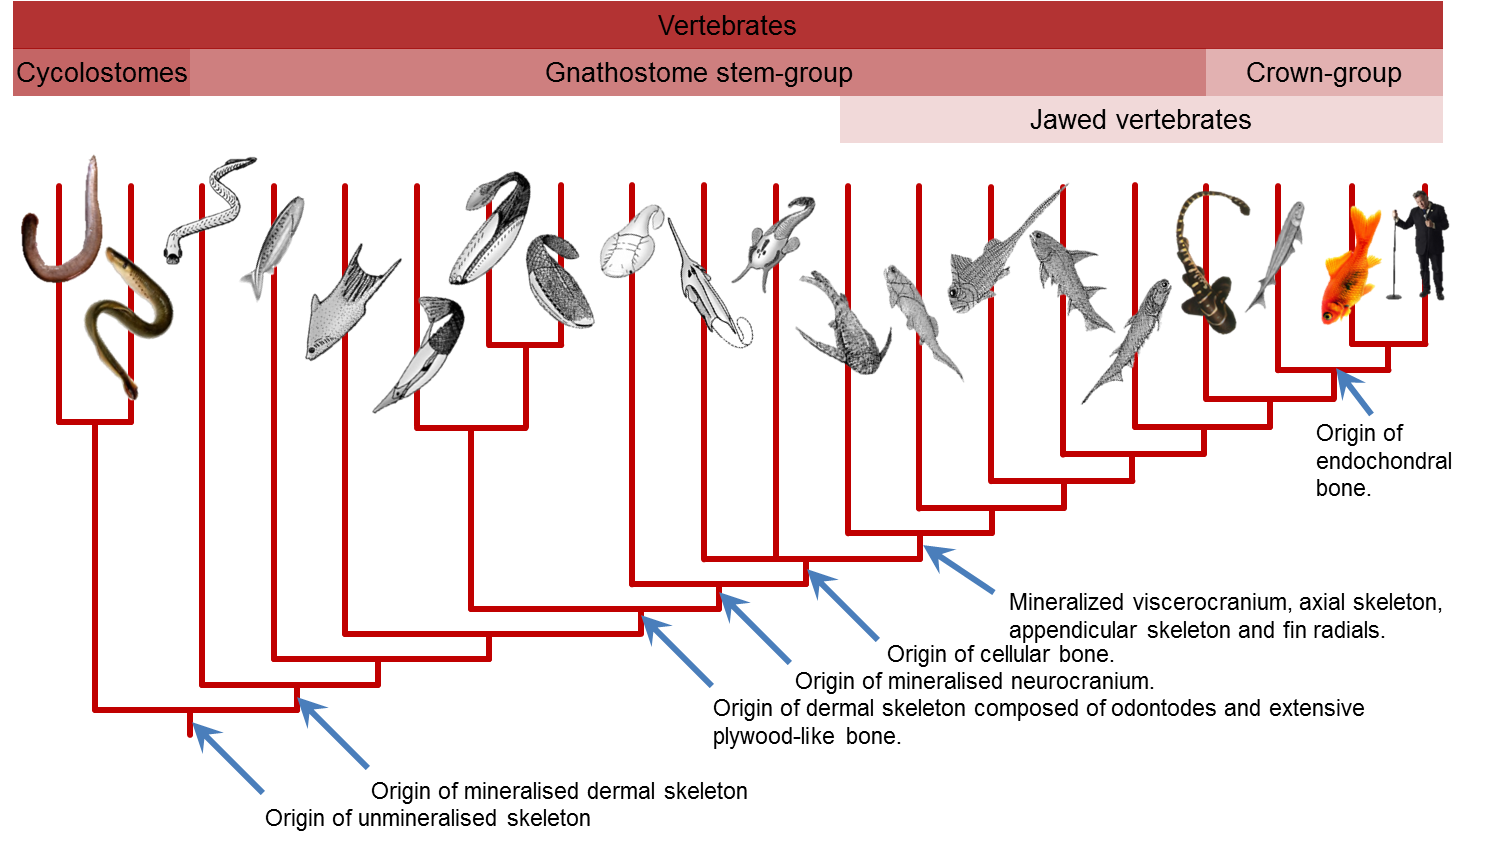 Vertebrate evolutionary tree based on the published phylogenies of Donoghue et al. (2000, 2006), Sansom et al. (2010) & Davis et al. (2012).